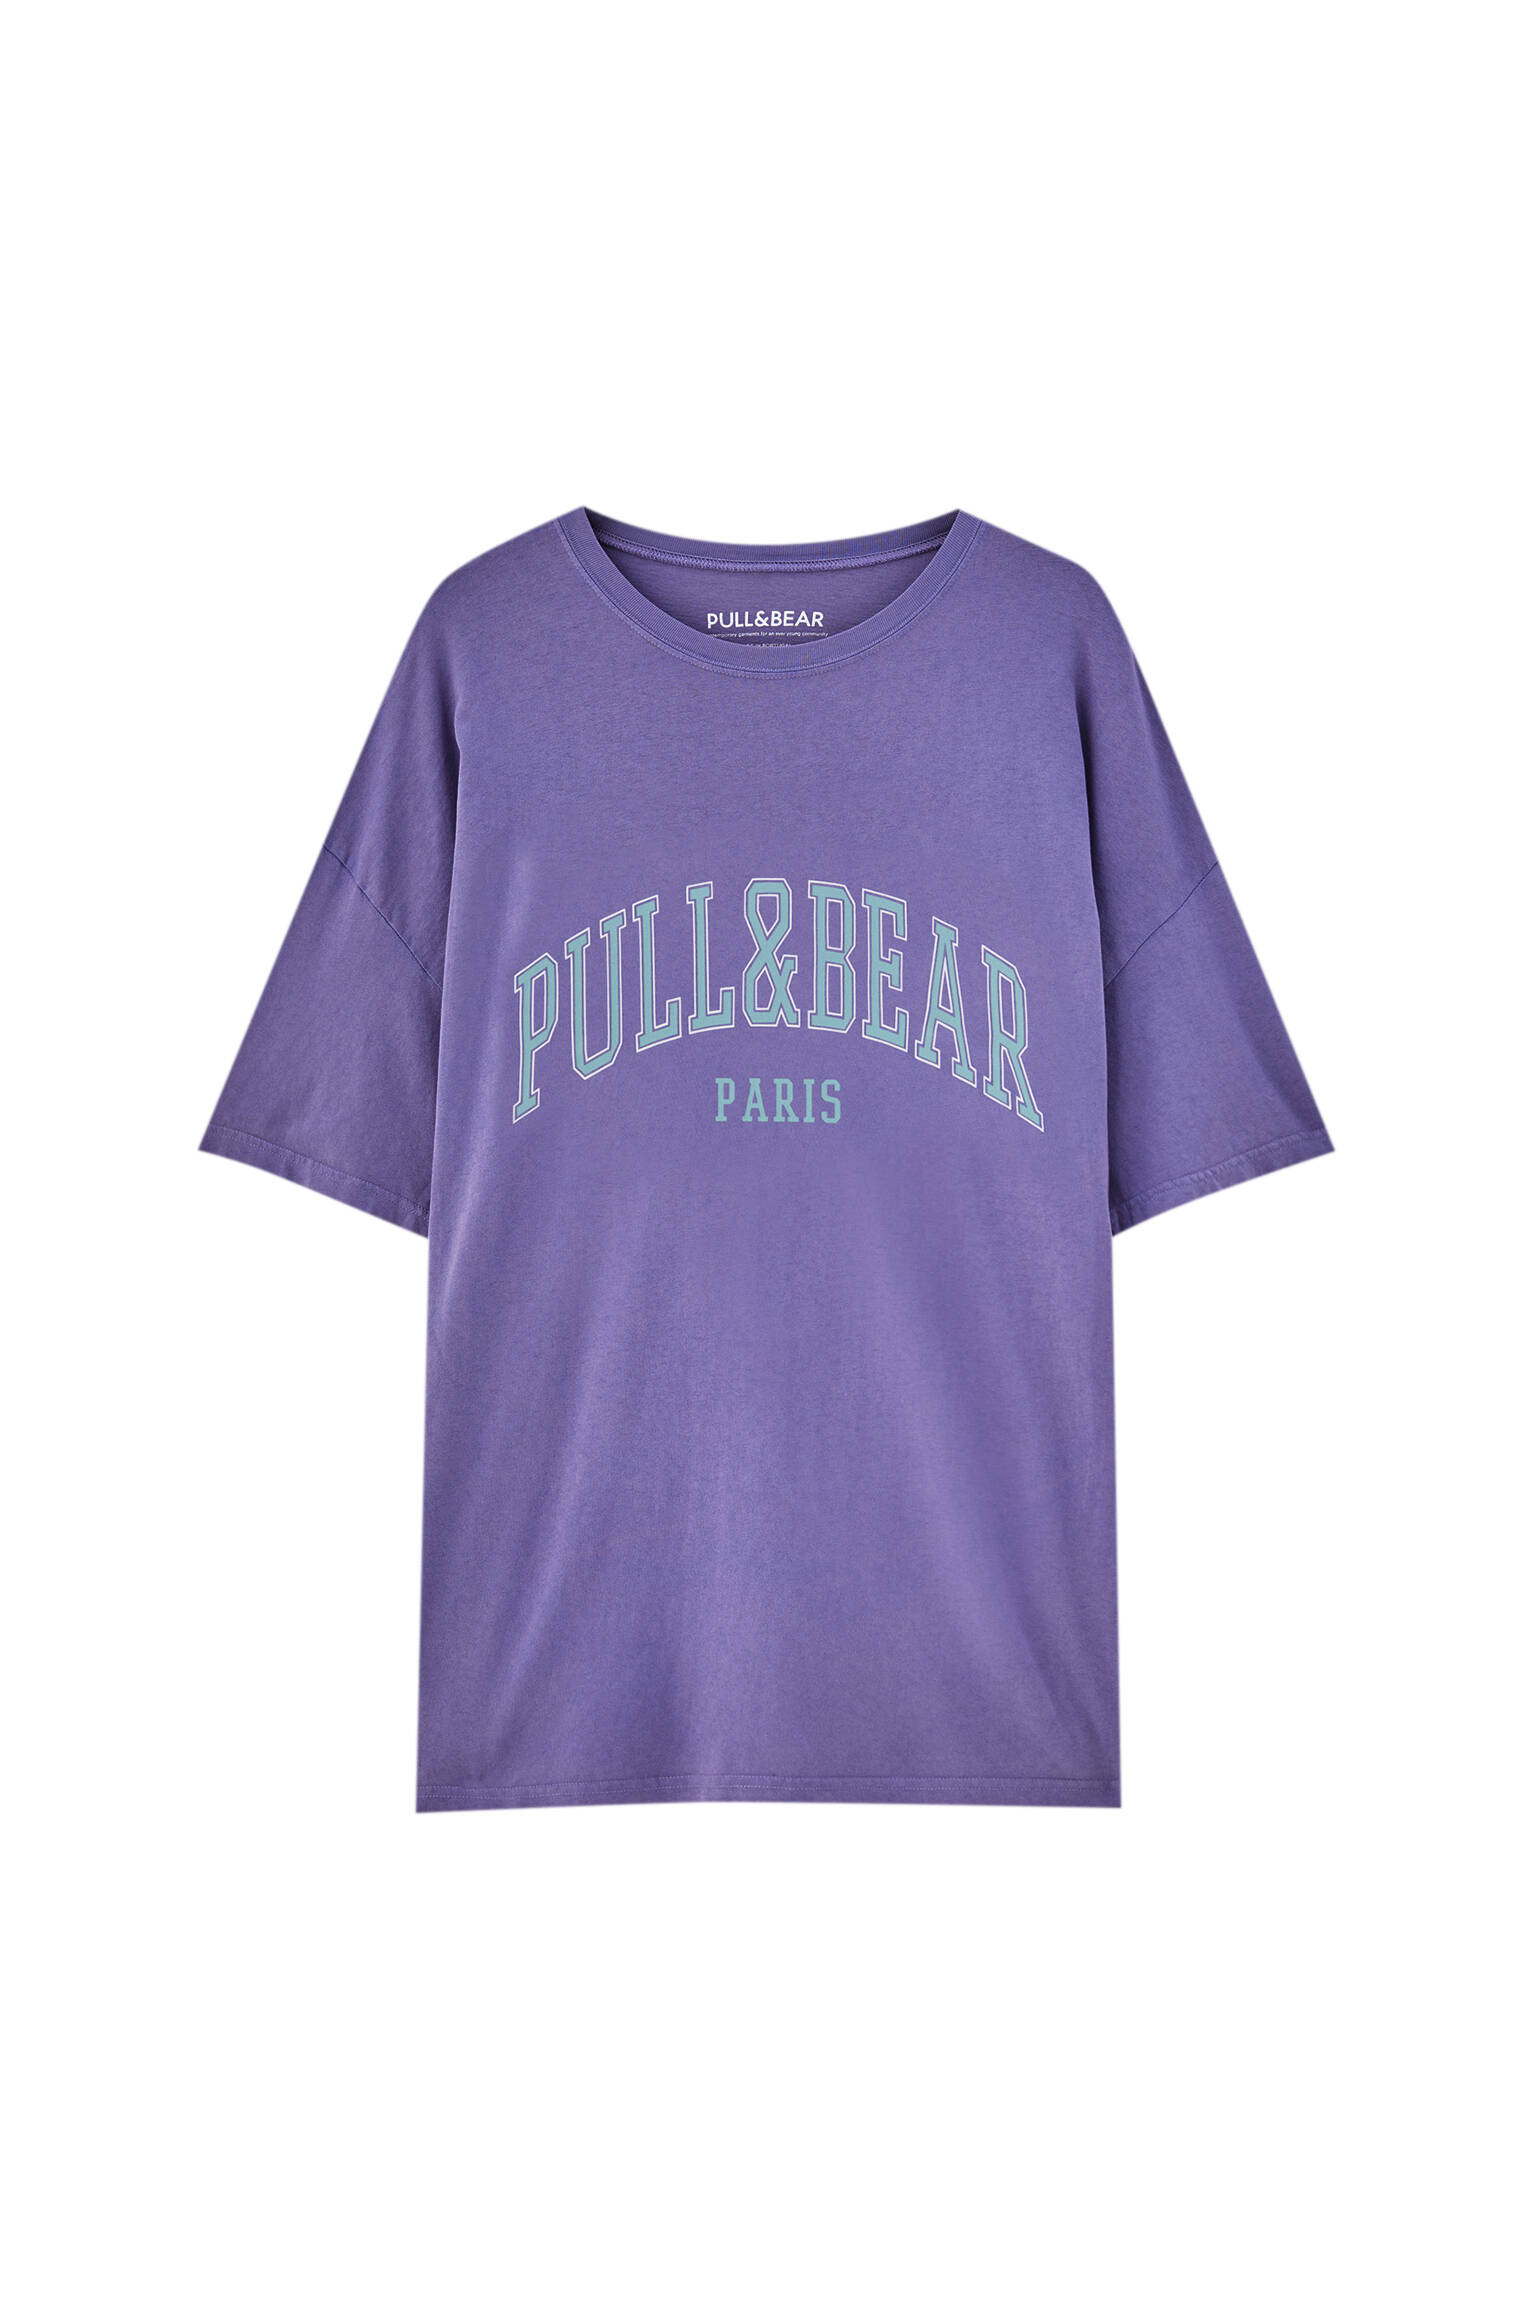 Pull&bear Homme T-shirt Basique 100 % Coton à Manches Courtes Et Col Rond, Avec Logo Pull&bear Et Inscription « paris » Contrastante. Disponible En Plusieurs Couleurs. Violet L